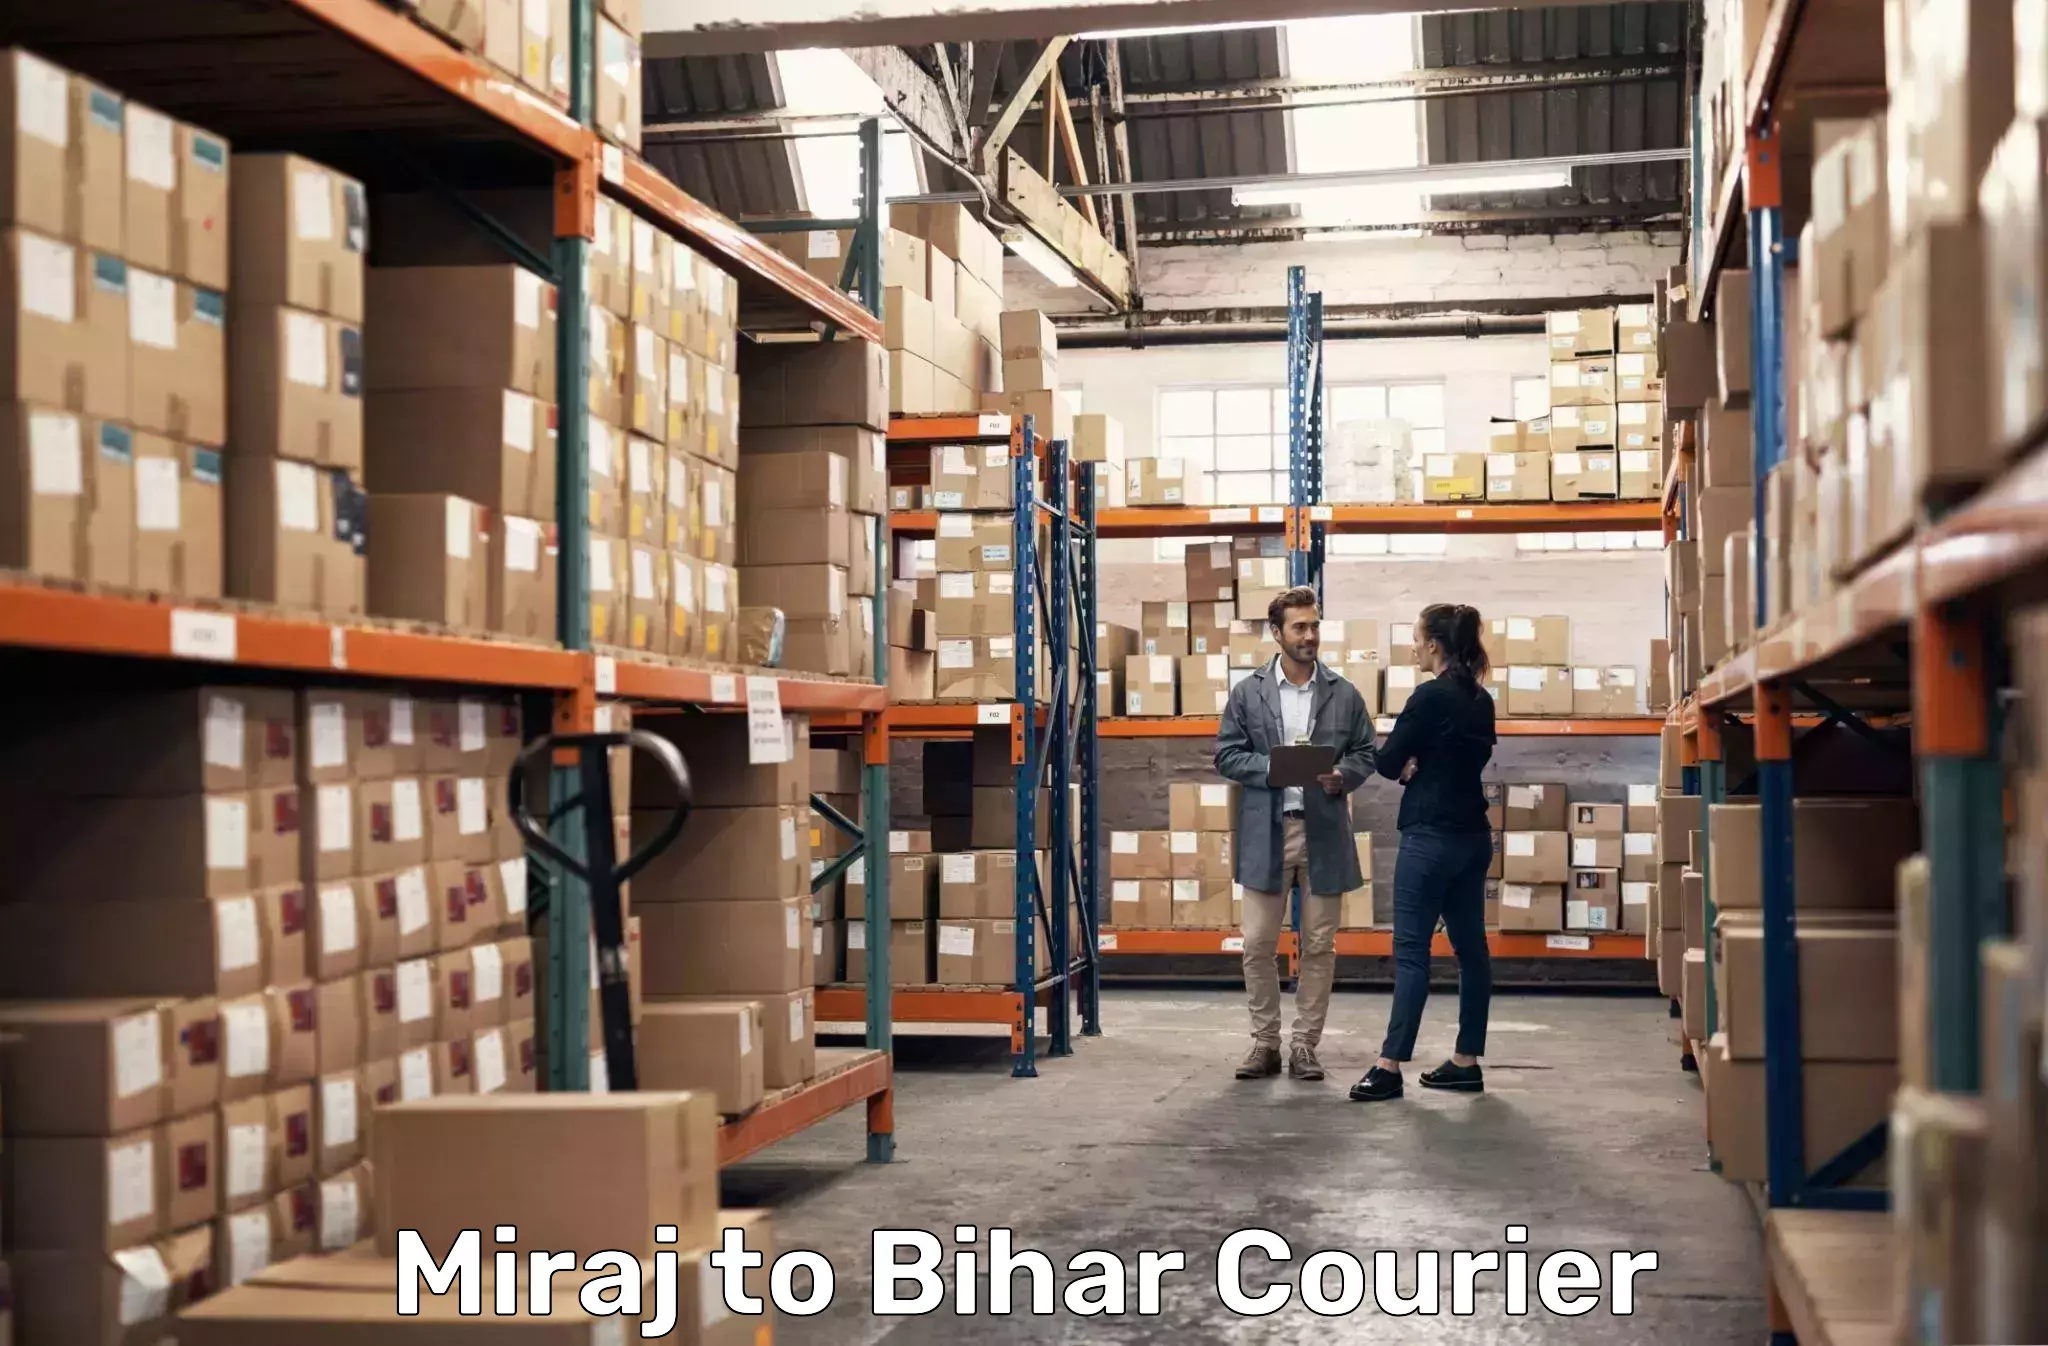 Residential courier service Miraj to Nuaon